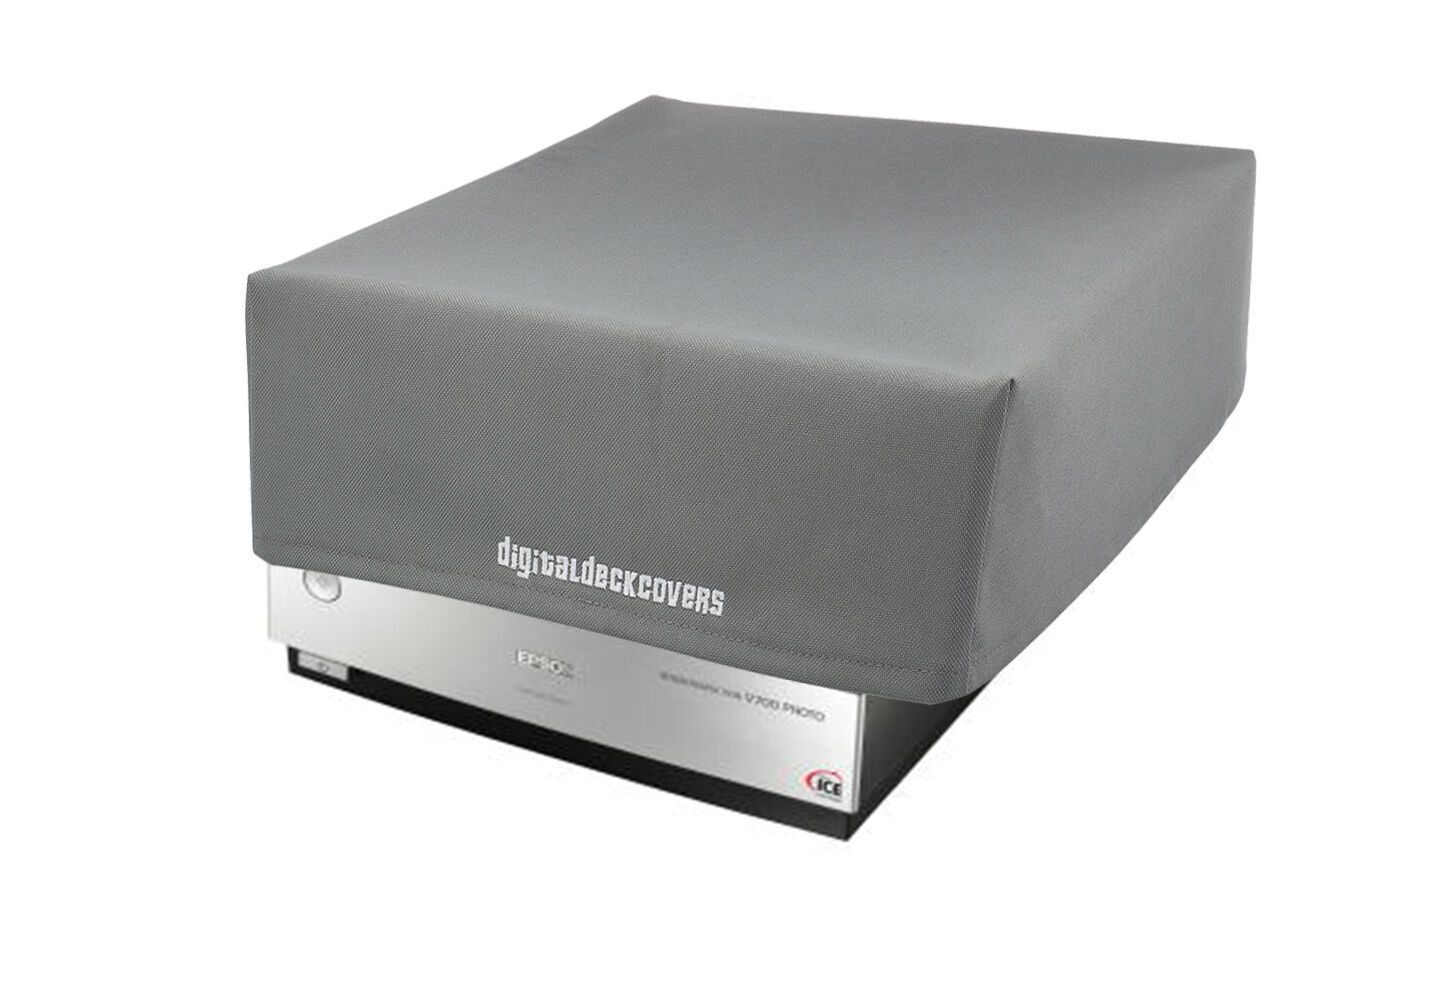 Epson v700 / v750 / v750-M Pro / v800 / v850 Film Scanner Dust Cover & Protector